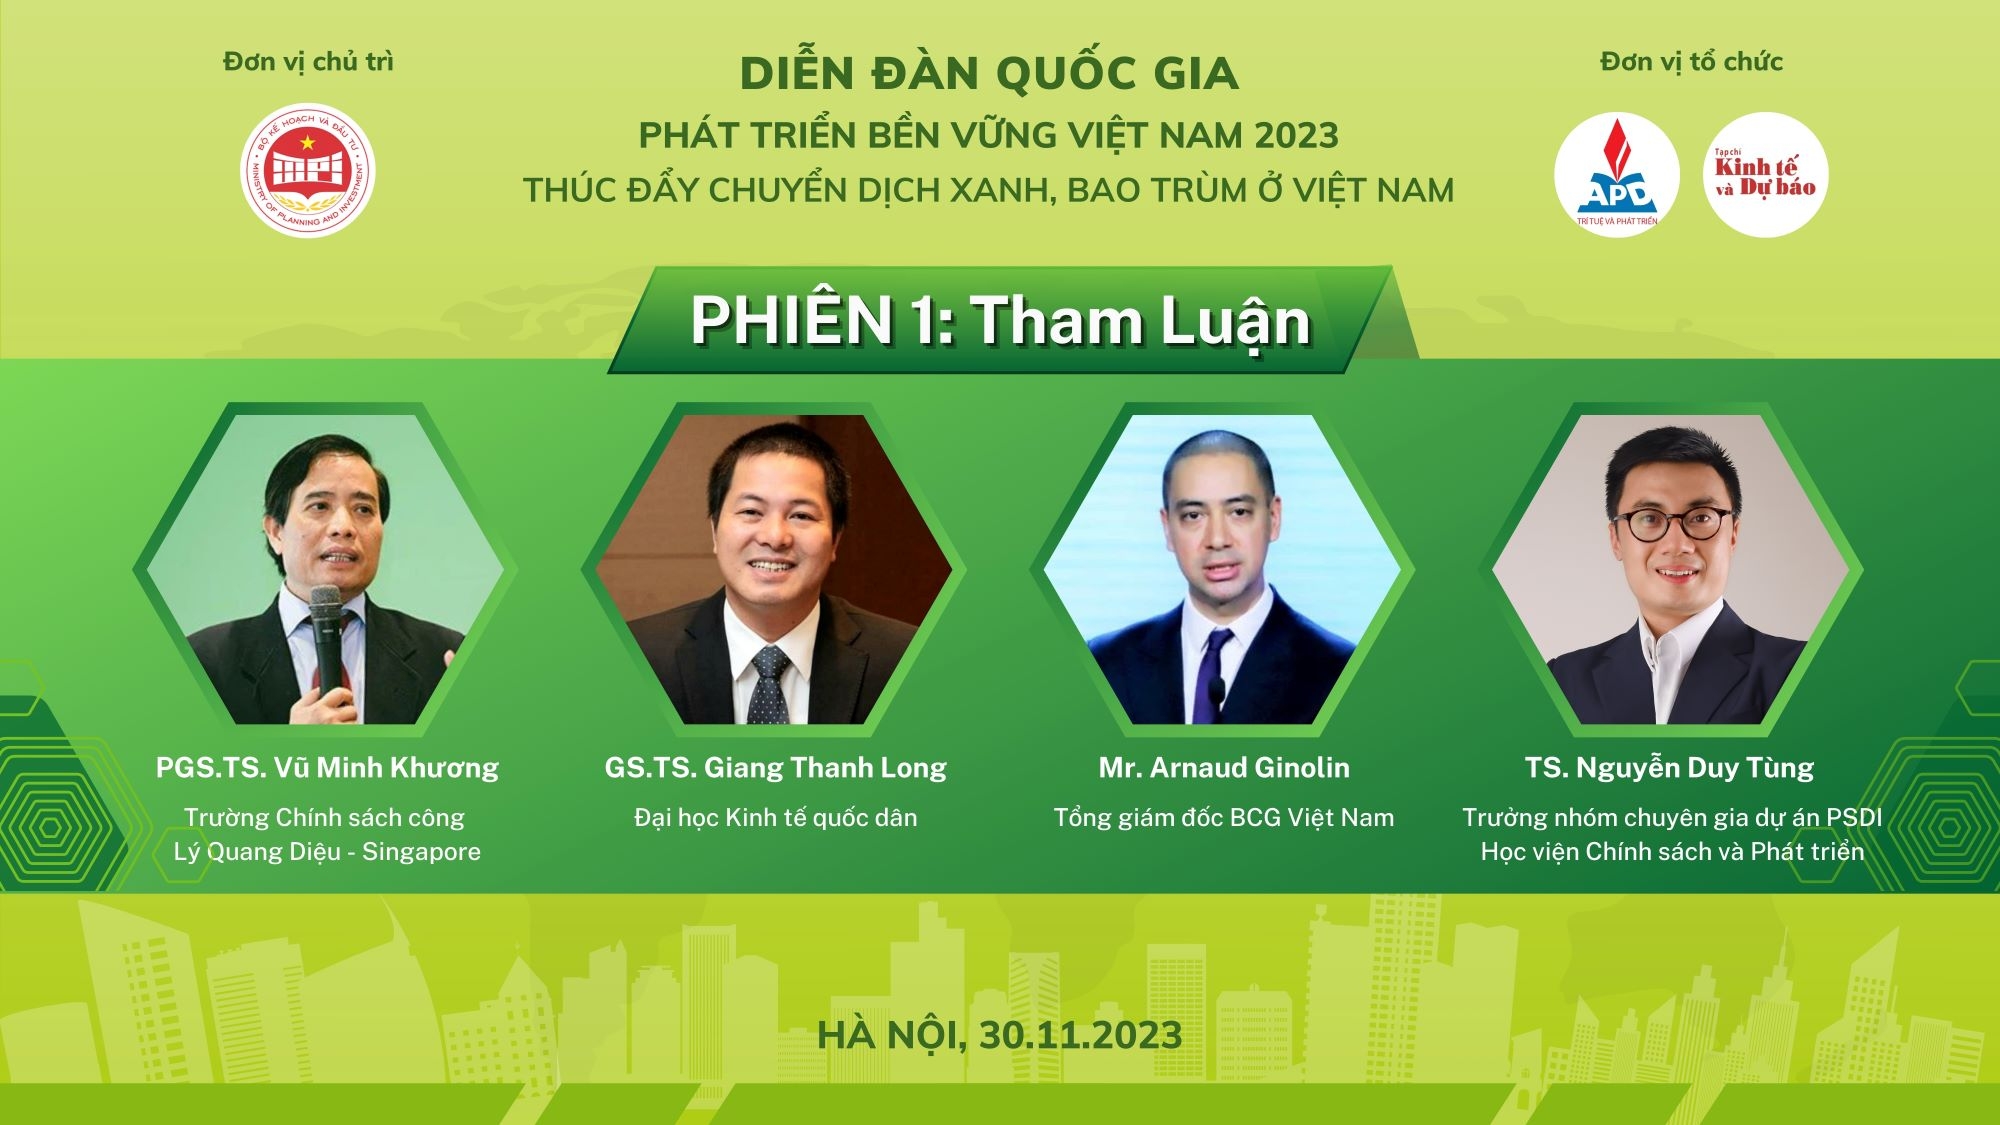 Diễn đàn quốc gia về Phát triển bền vững Việt Nam 2023: “Thúc đẩy chuyển dịch xanh, bao trùm ở Việt Nam”.